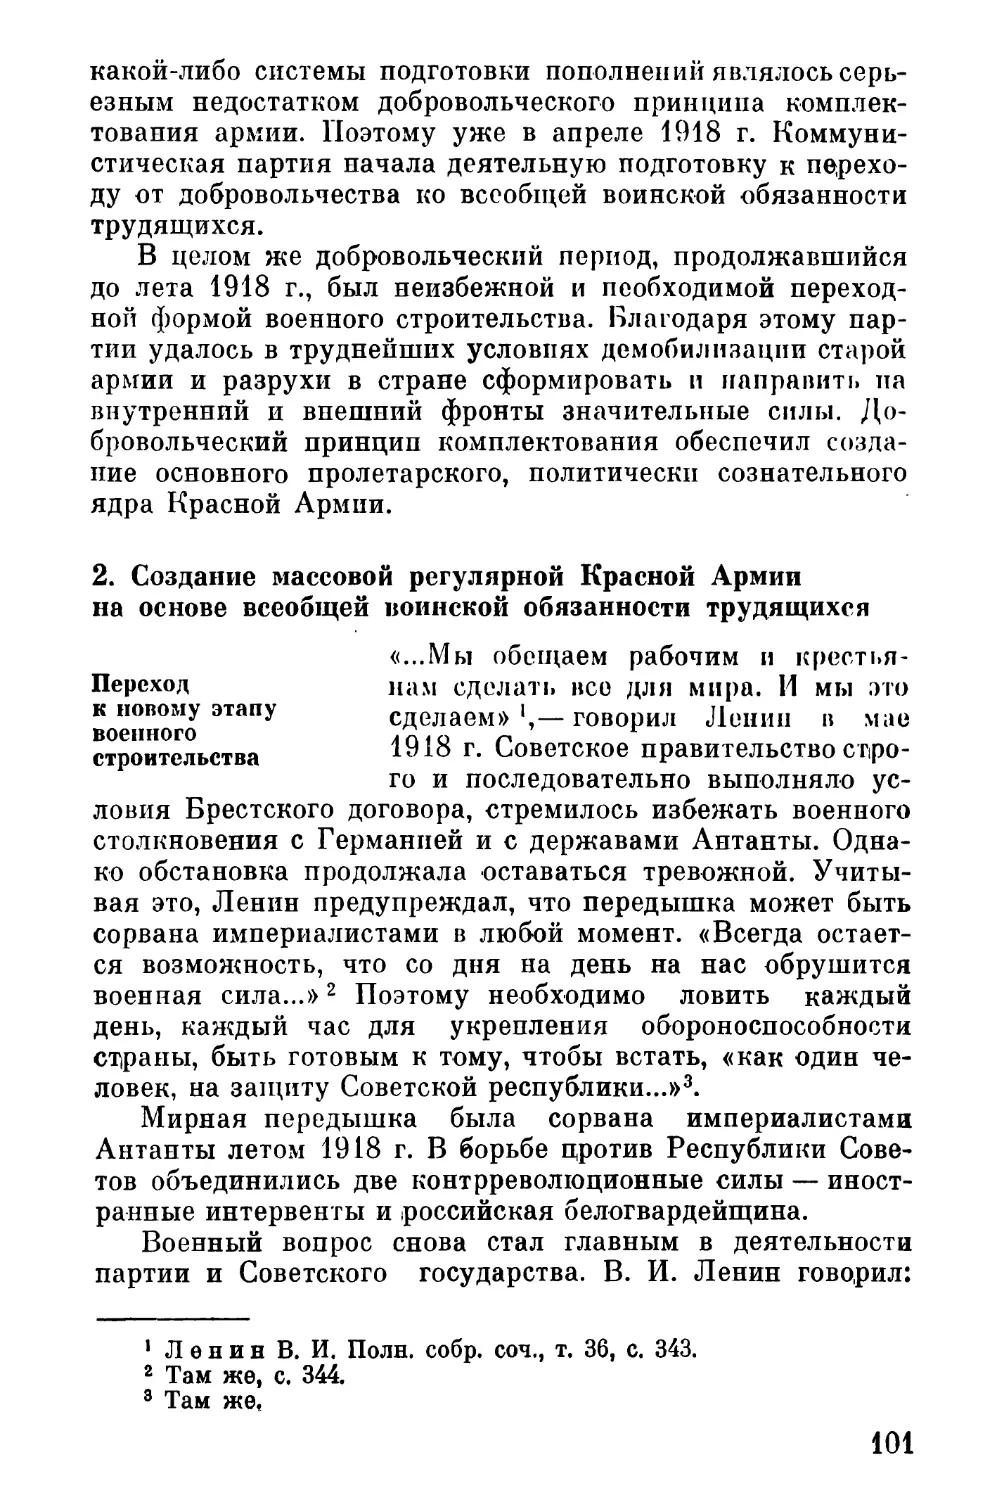 2. Создание массовой регулярной Красной Армии на основе всеобщей воинской обязанности трудящихся